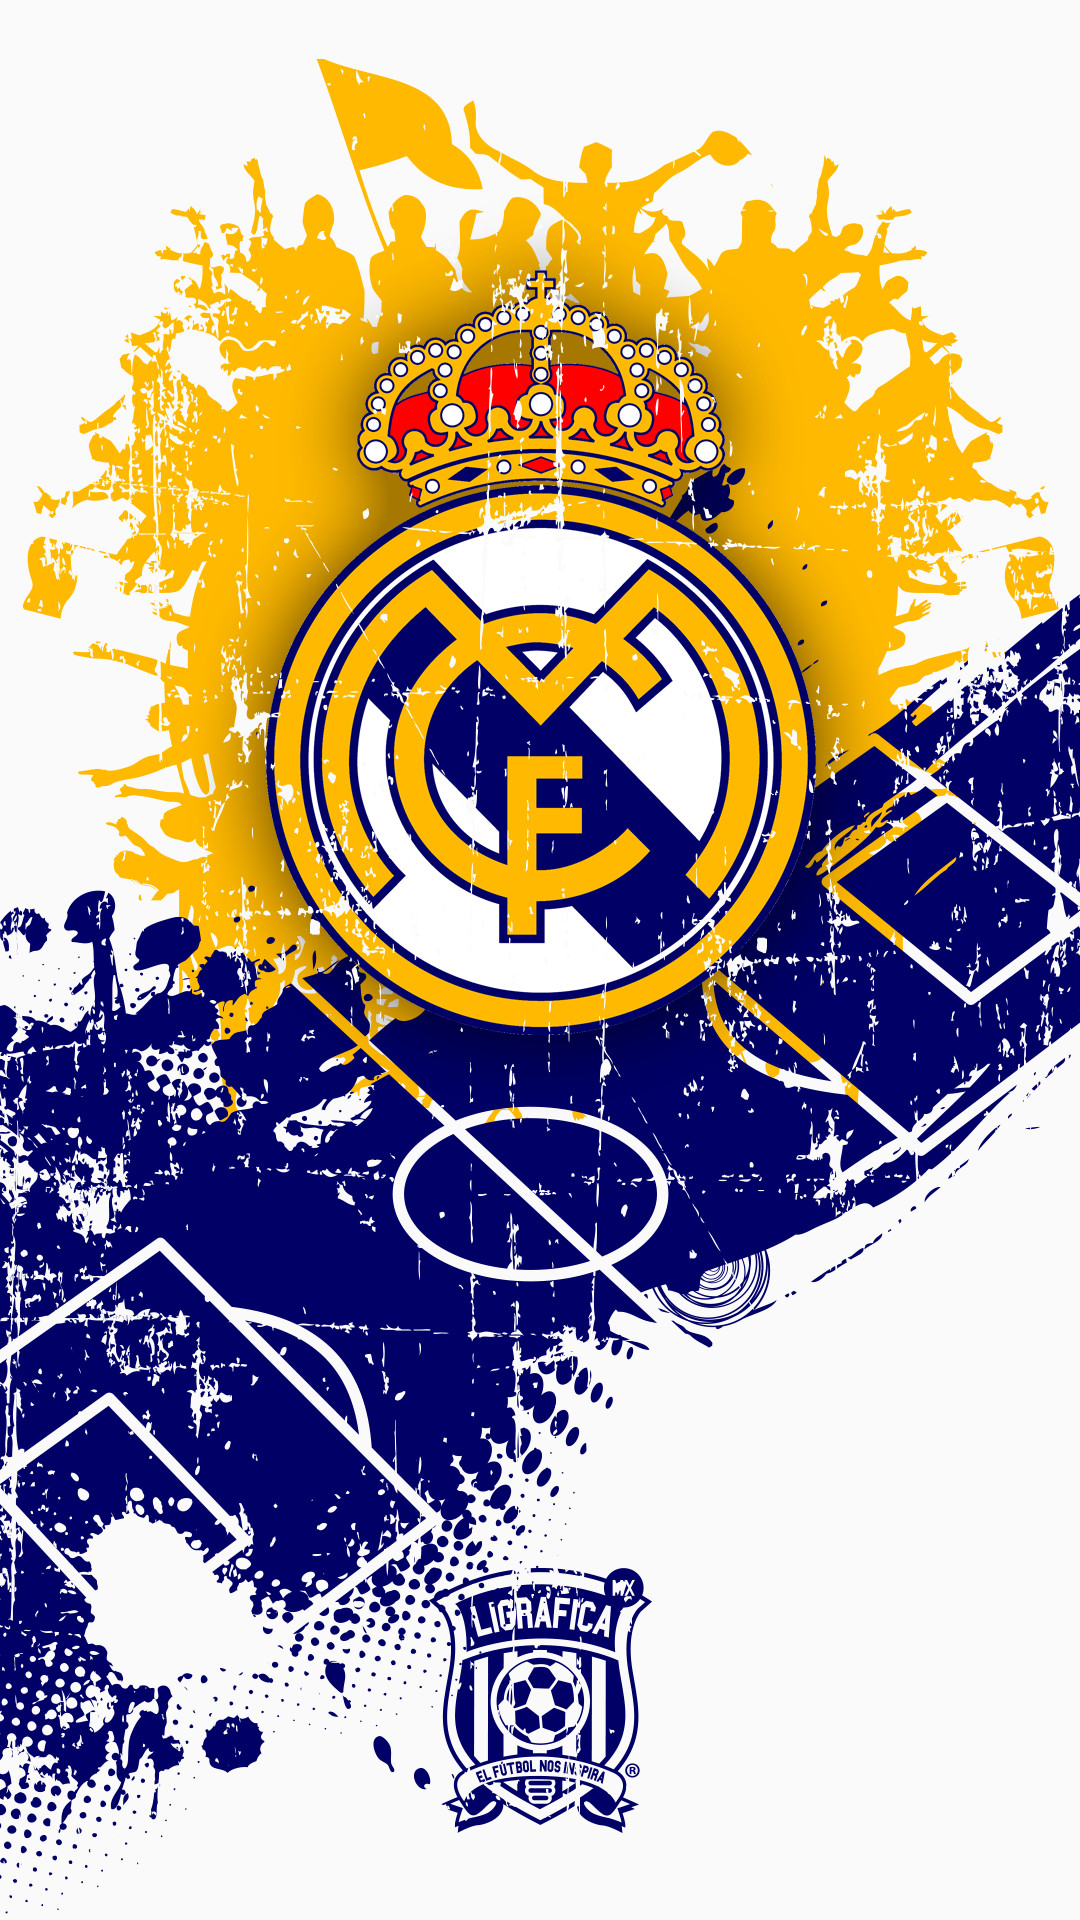 1080x1920 Real Madrid. See More. #LigraficaMX Â·131114CTG